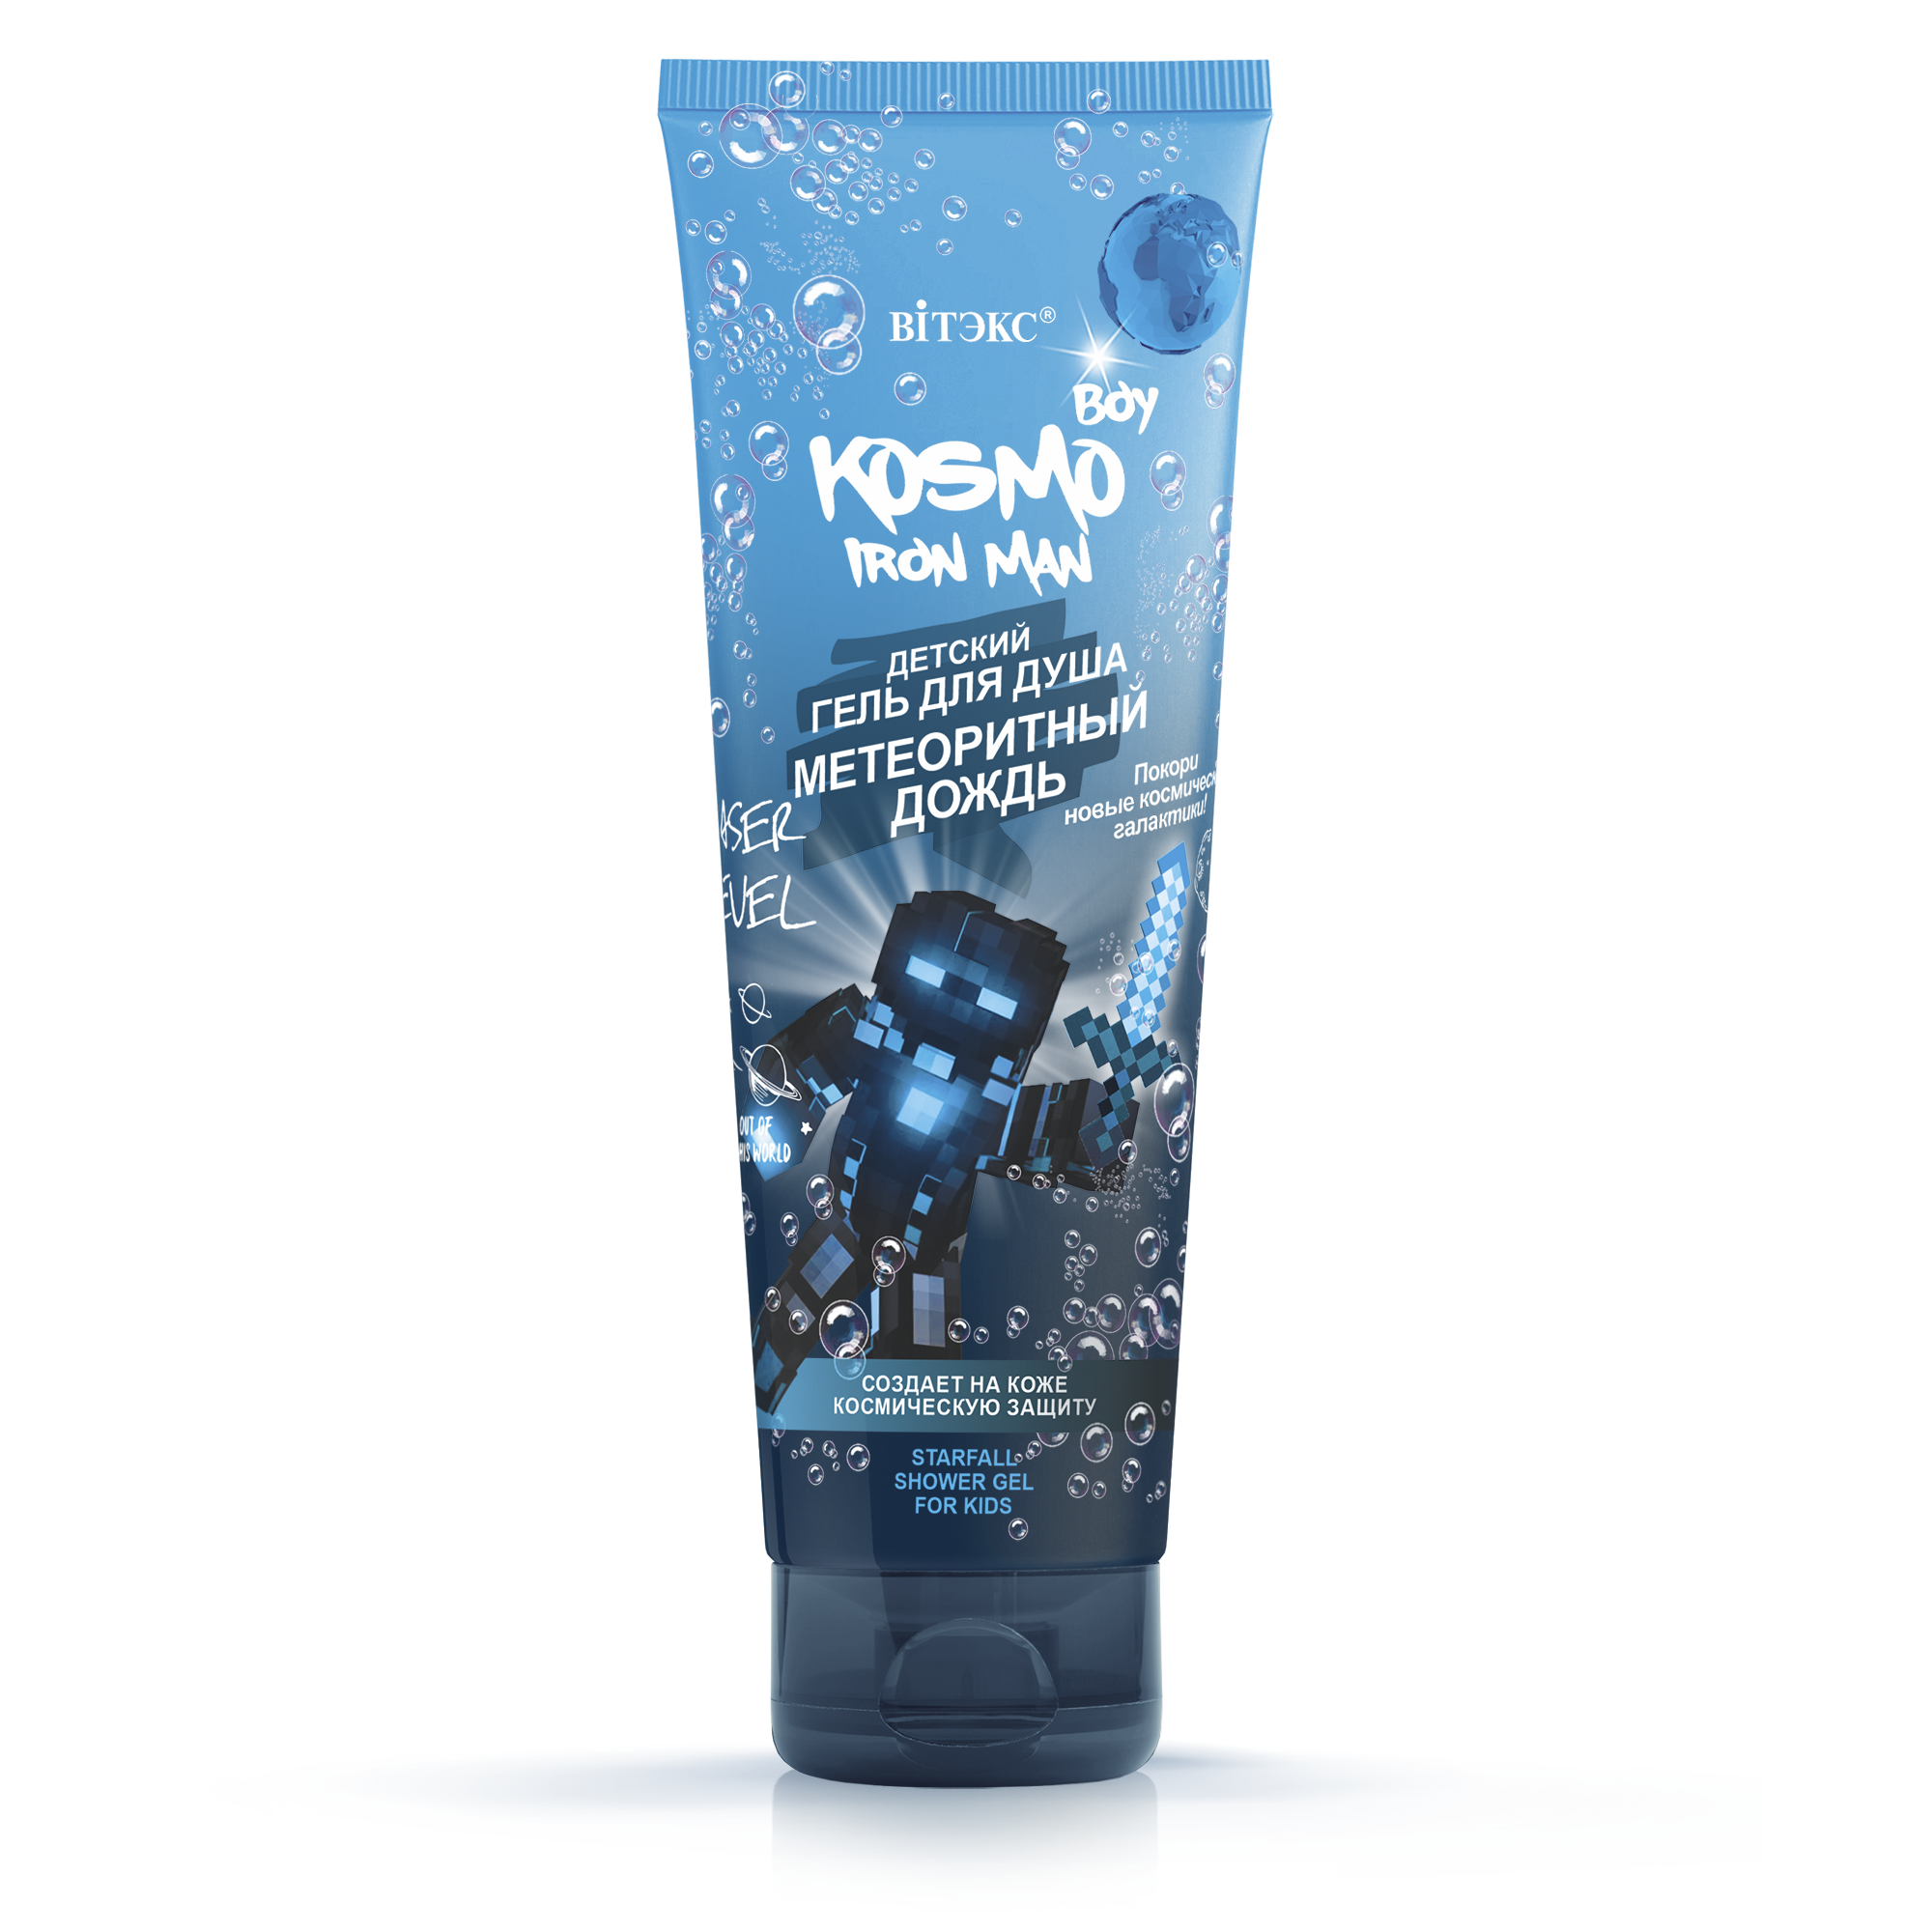 Kosmo Boy Iron Man Çocuklar İçin Duş Jeli (250 ml) | Auraline Cosmetics